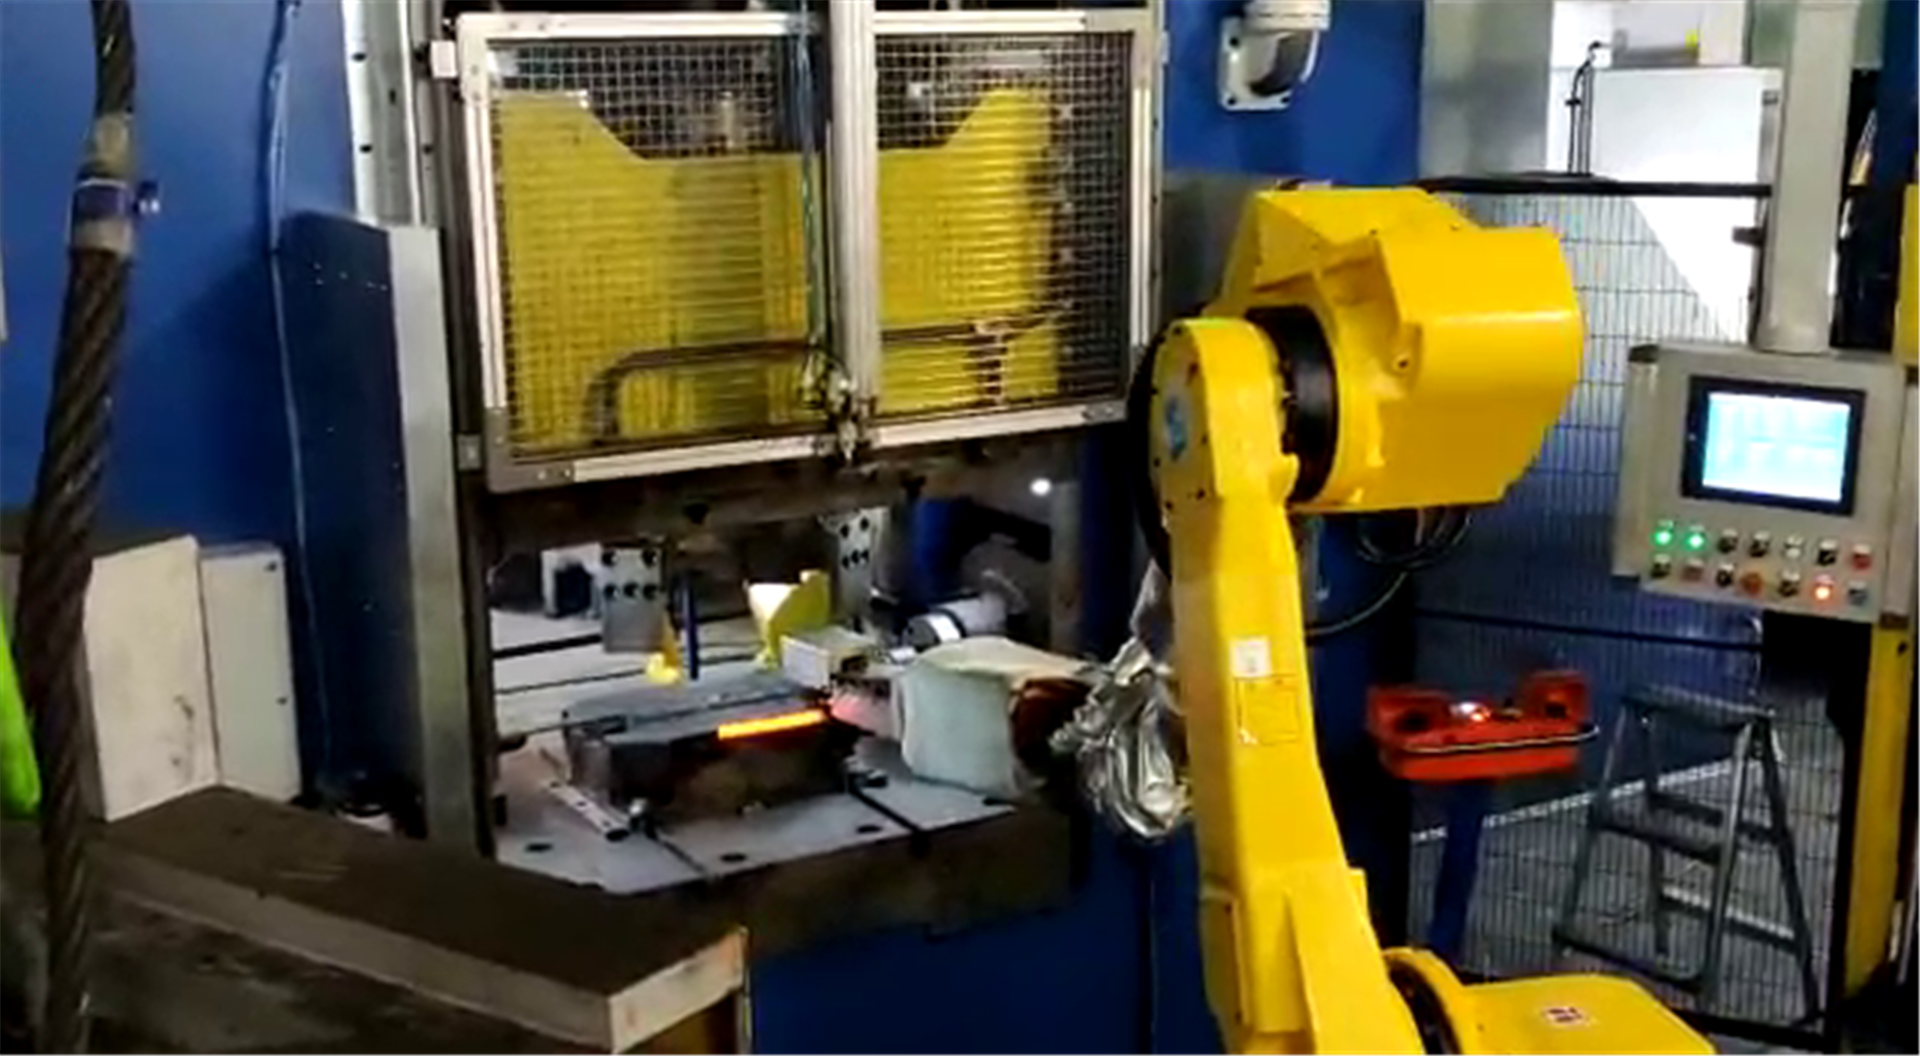 asservimento-stampaggio-a-caldo-2-automazioni-industriali.png